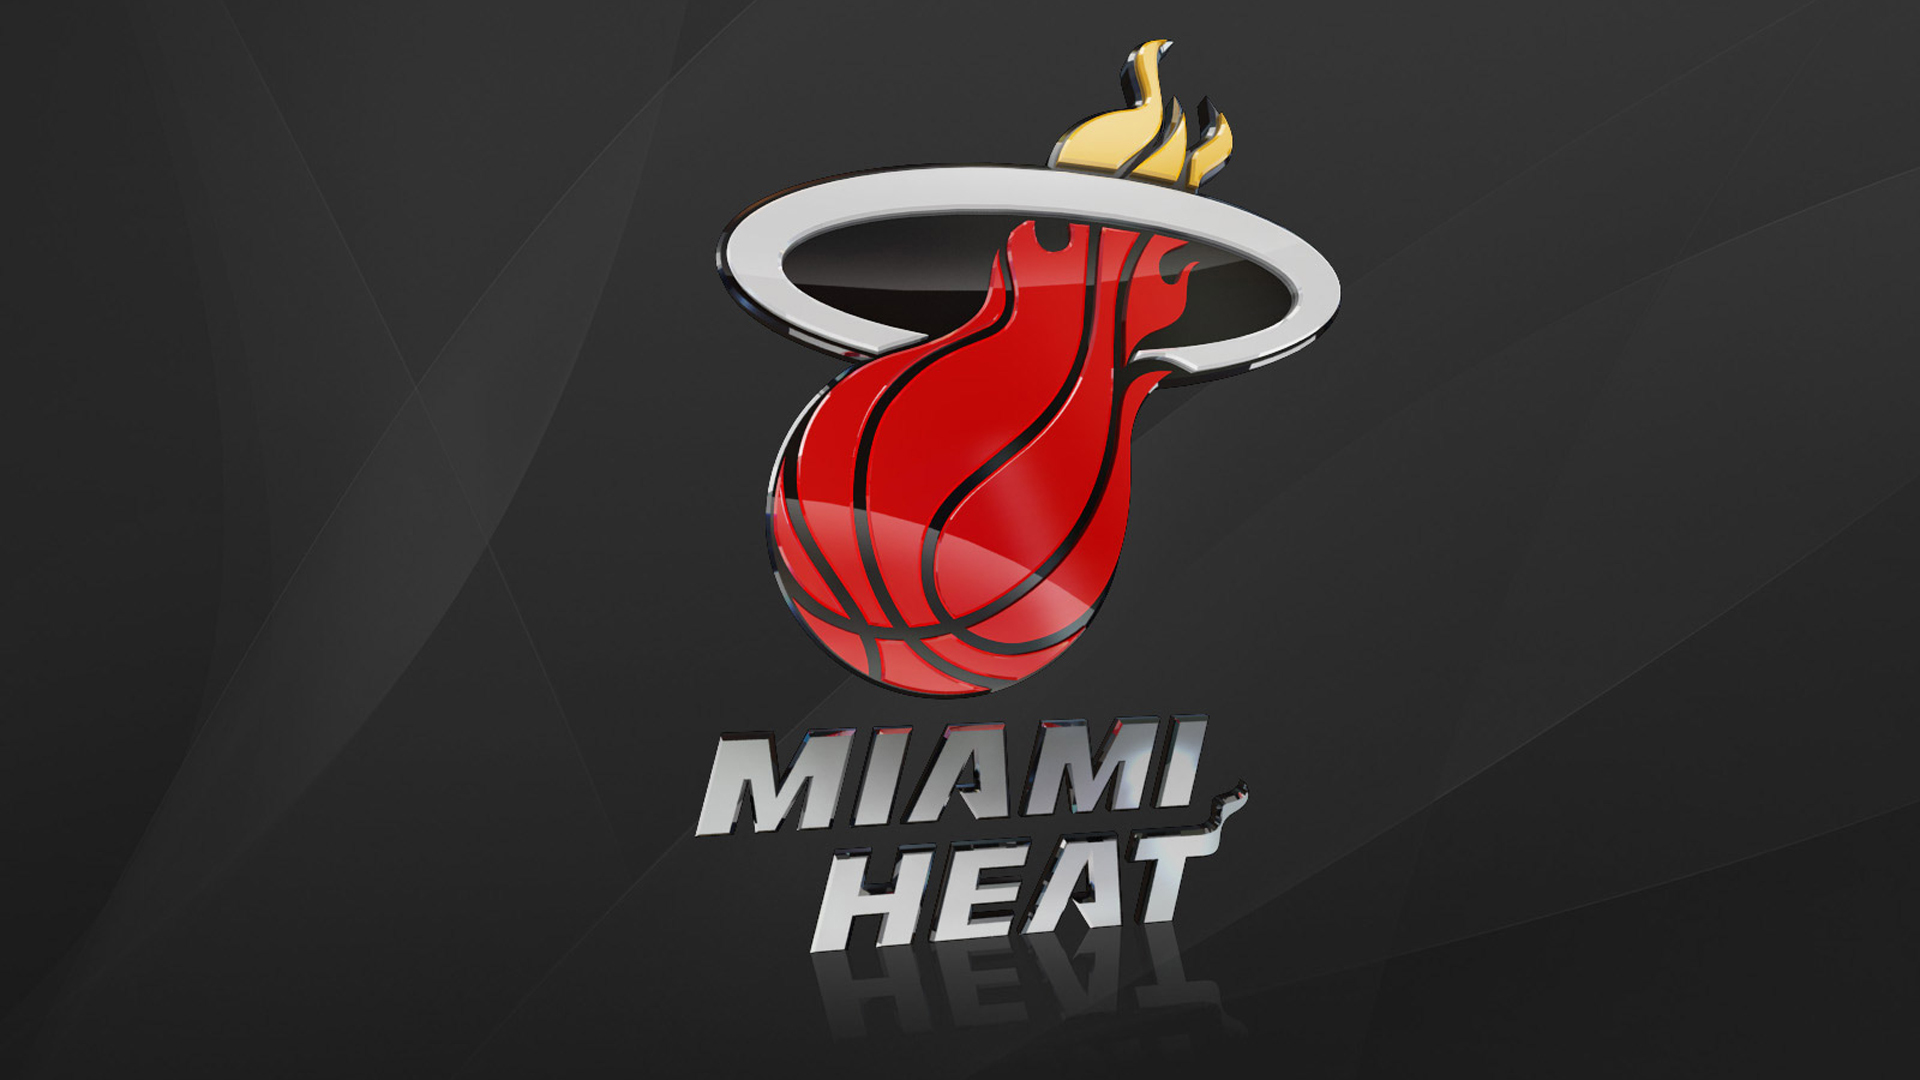 Miami Heat Images